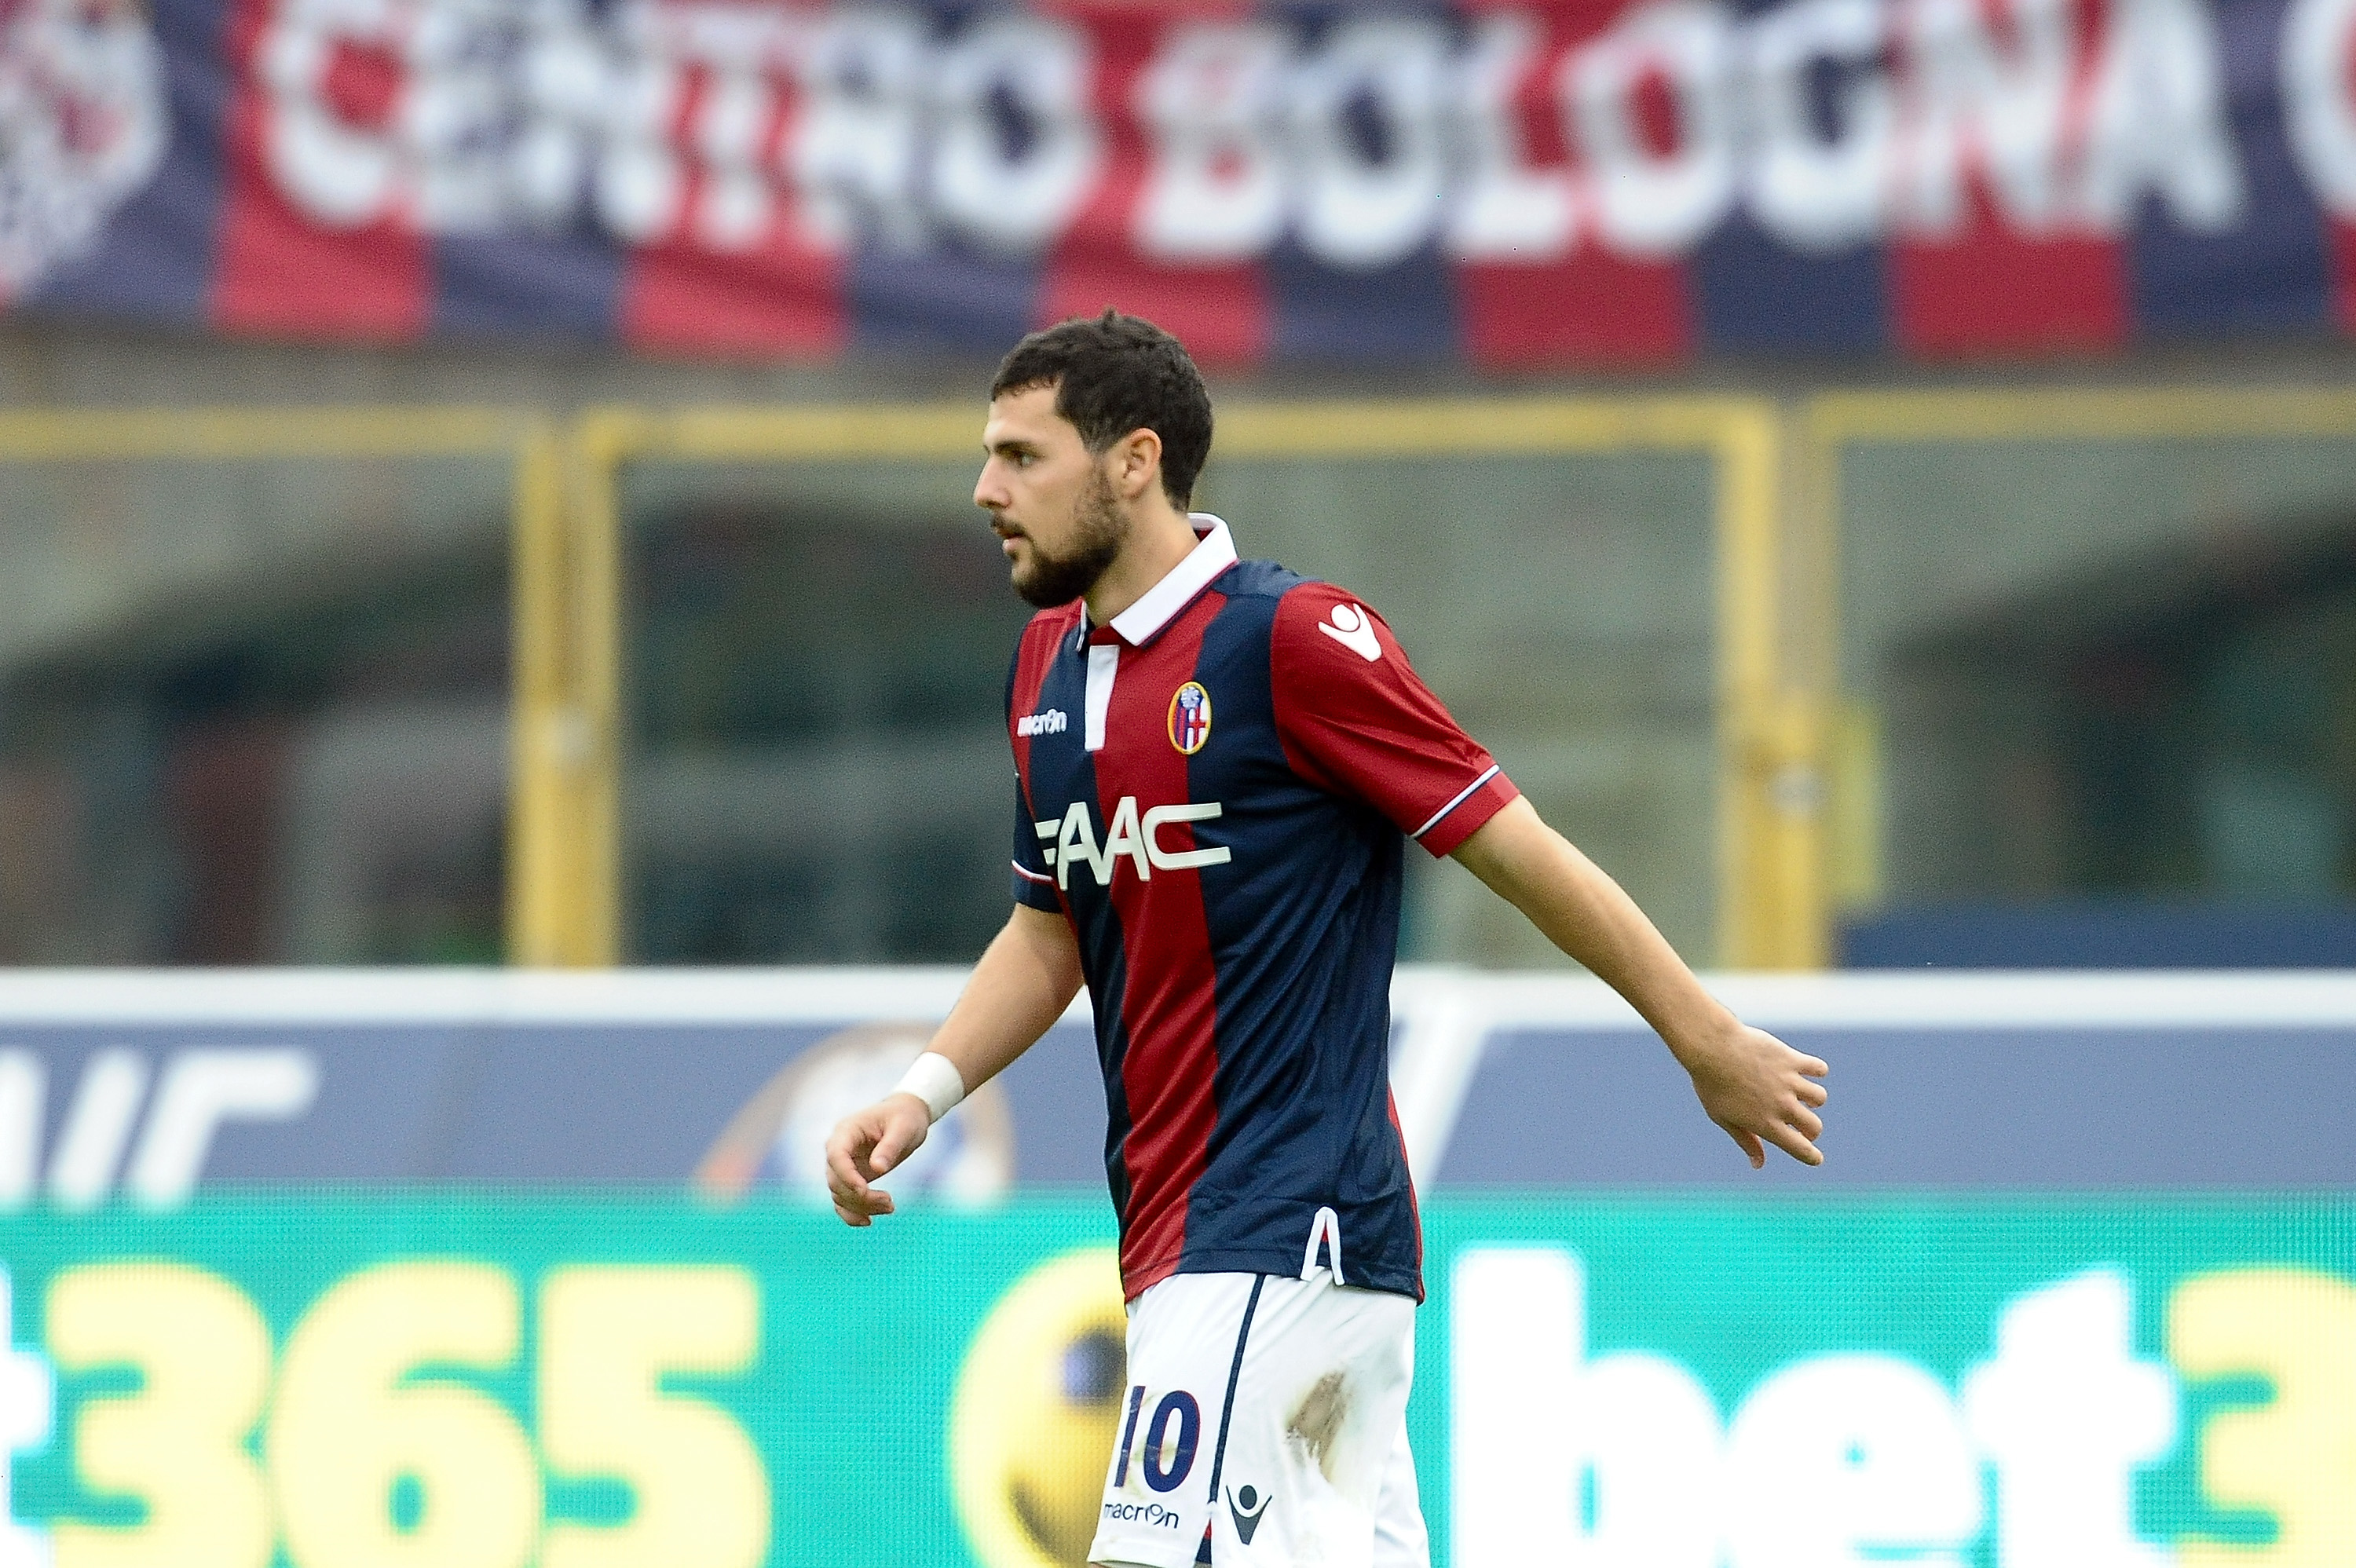 Destro, Gastaldello and Maietta to miss Bologna-Inter